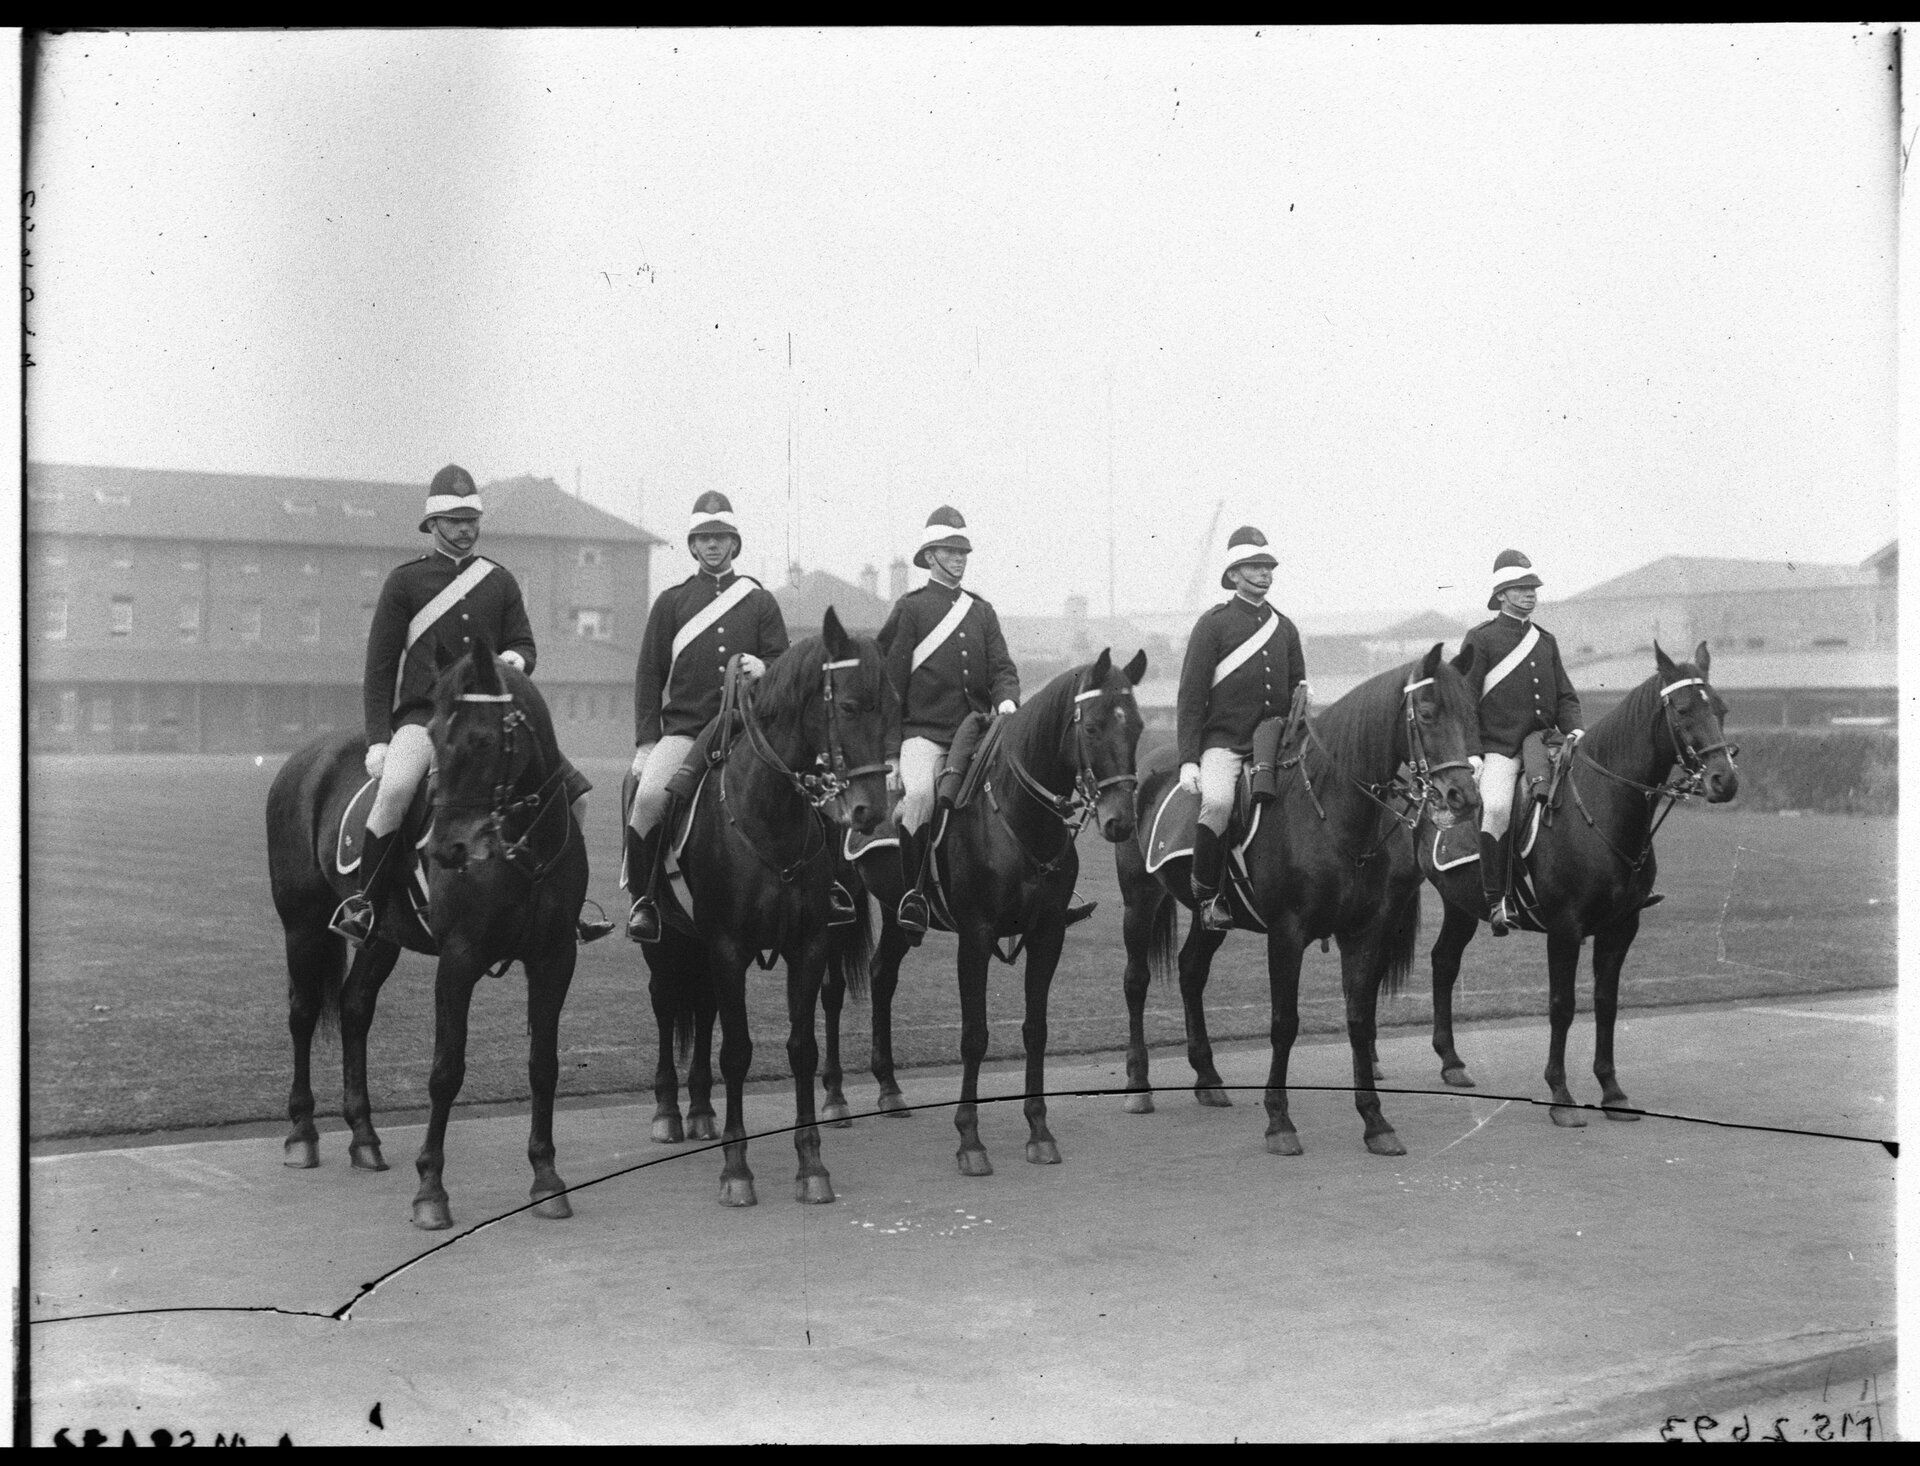 Five police men on horseback 